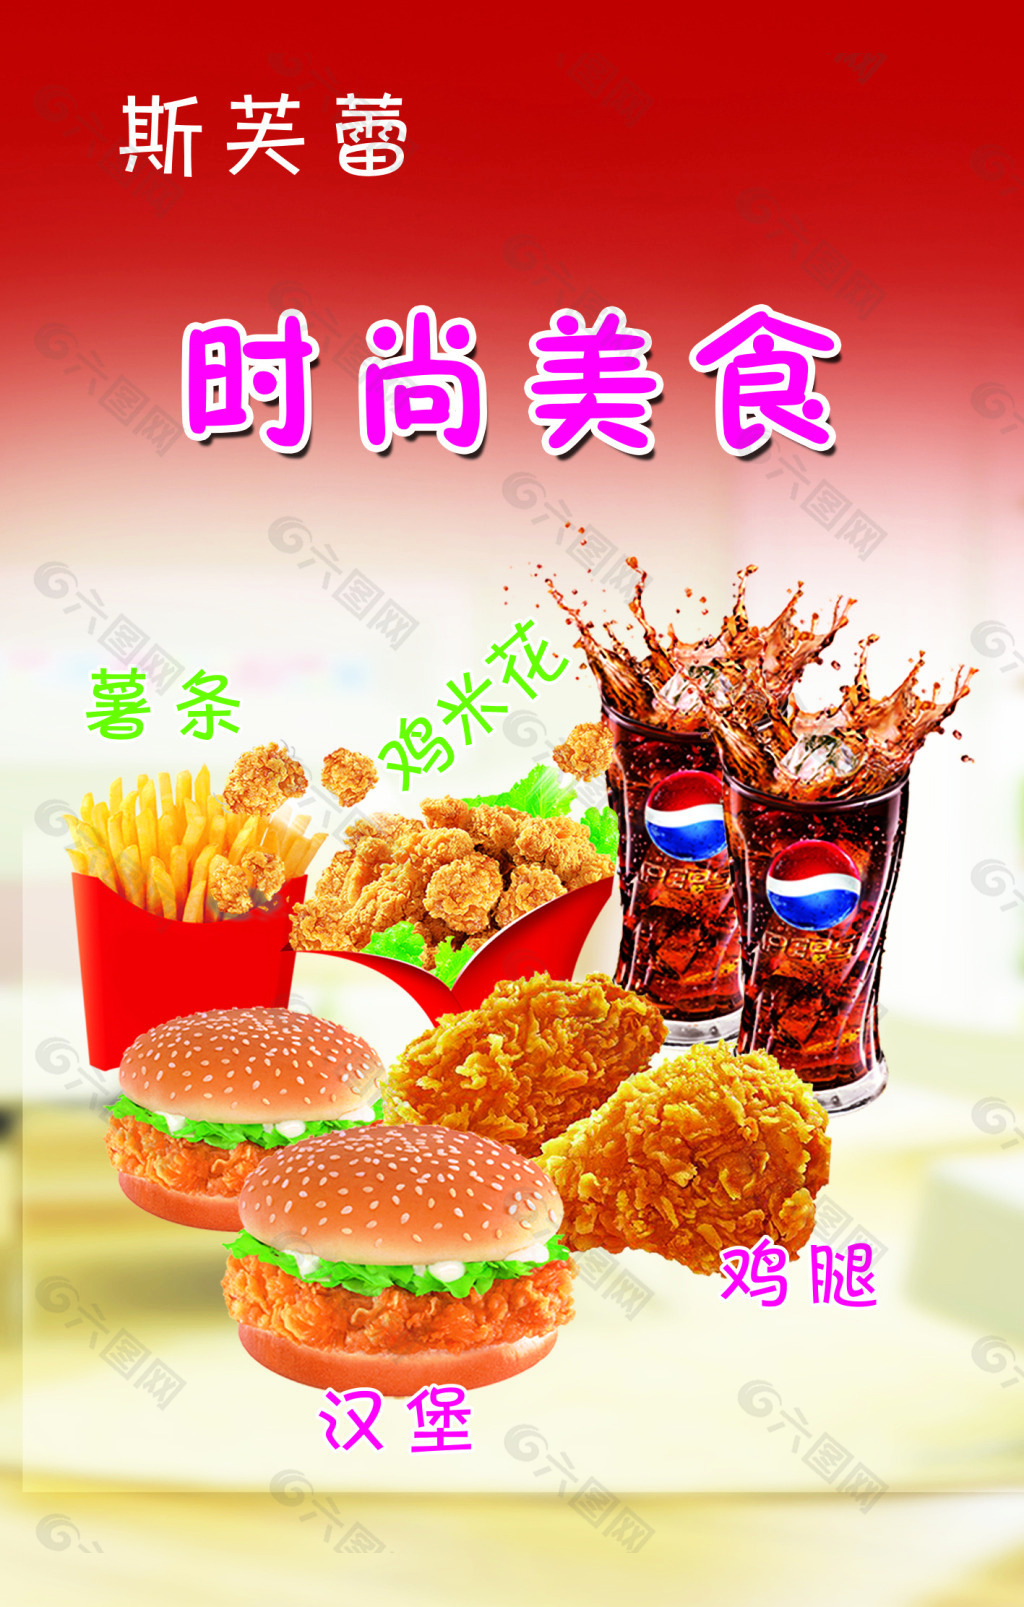 汉堡薯条鸡米花鸡腿美食平面广告素材免费下载(图片编号:5375349)